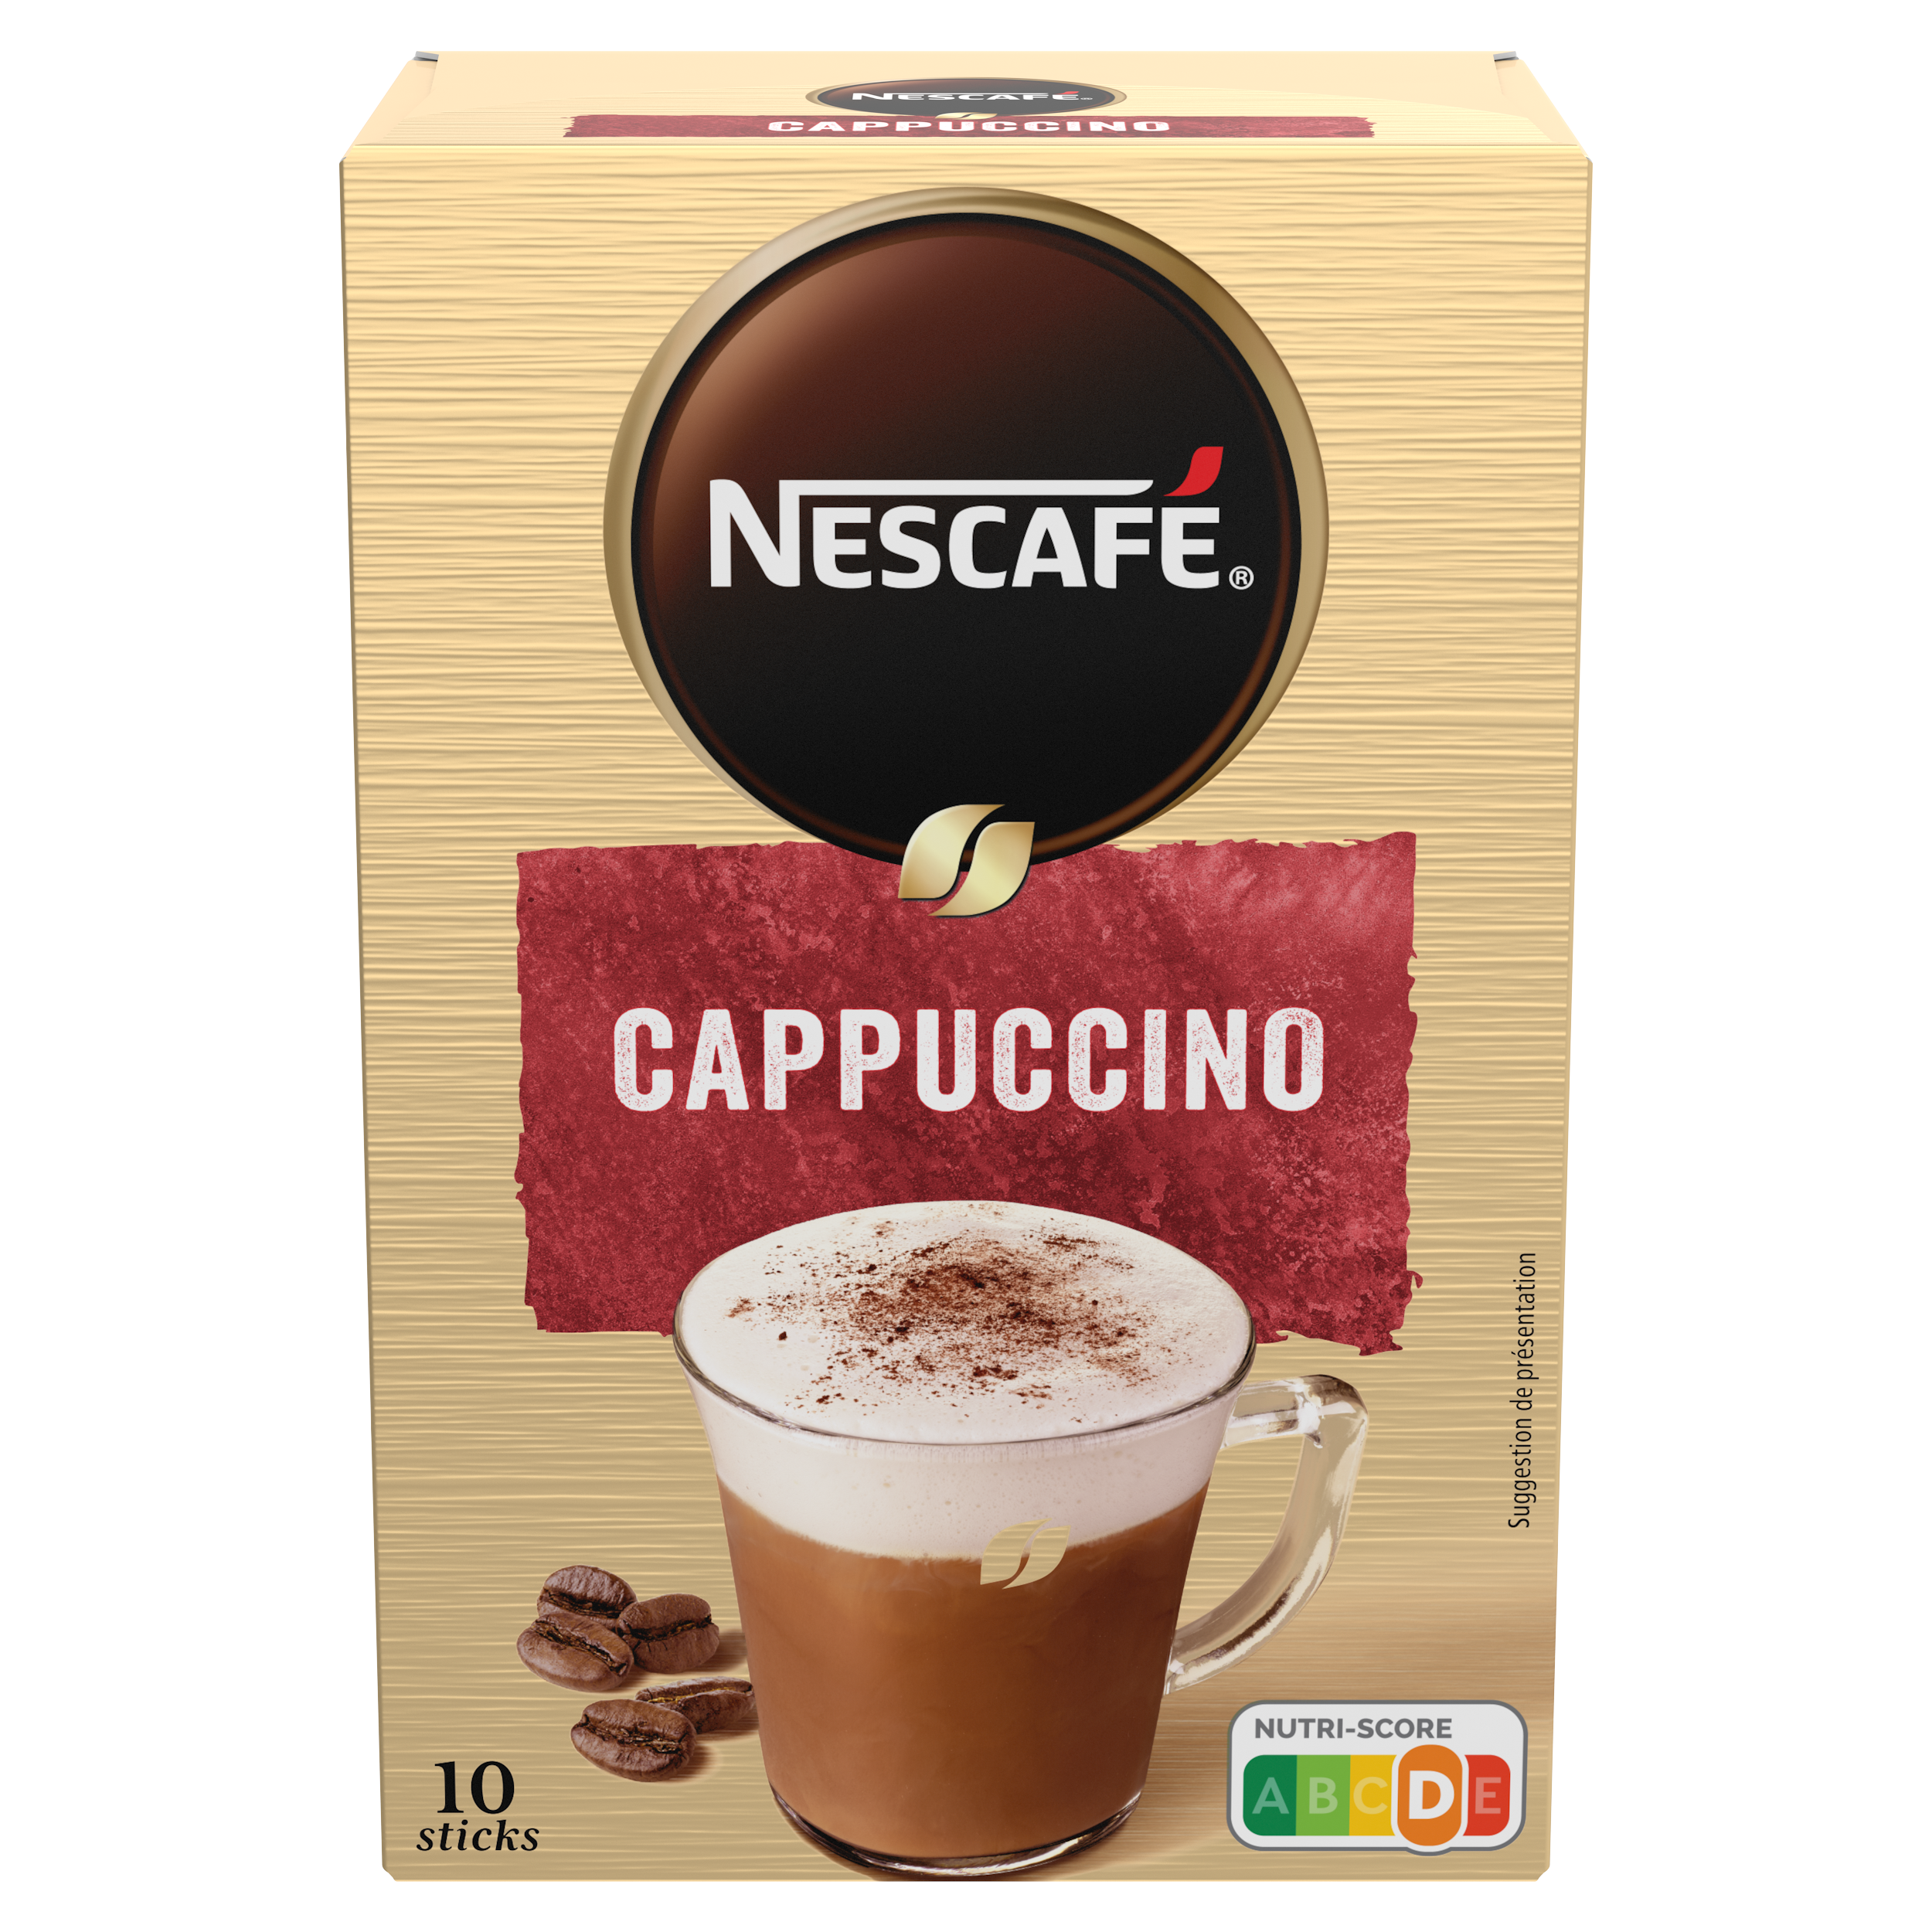 NESCAFE Cappuccino, Café soluble, Boîte de 10 sticks (14g chacun